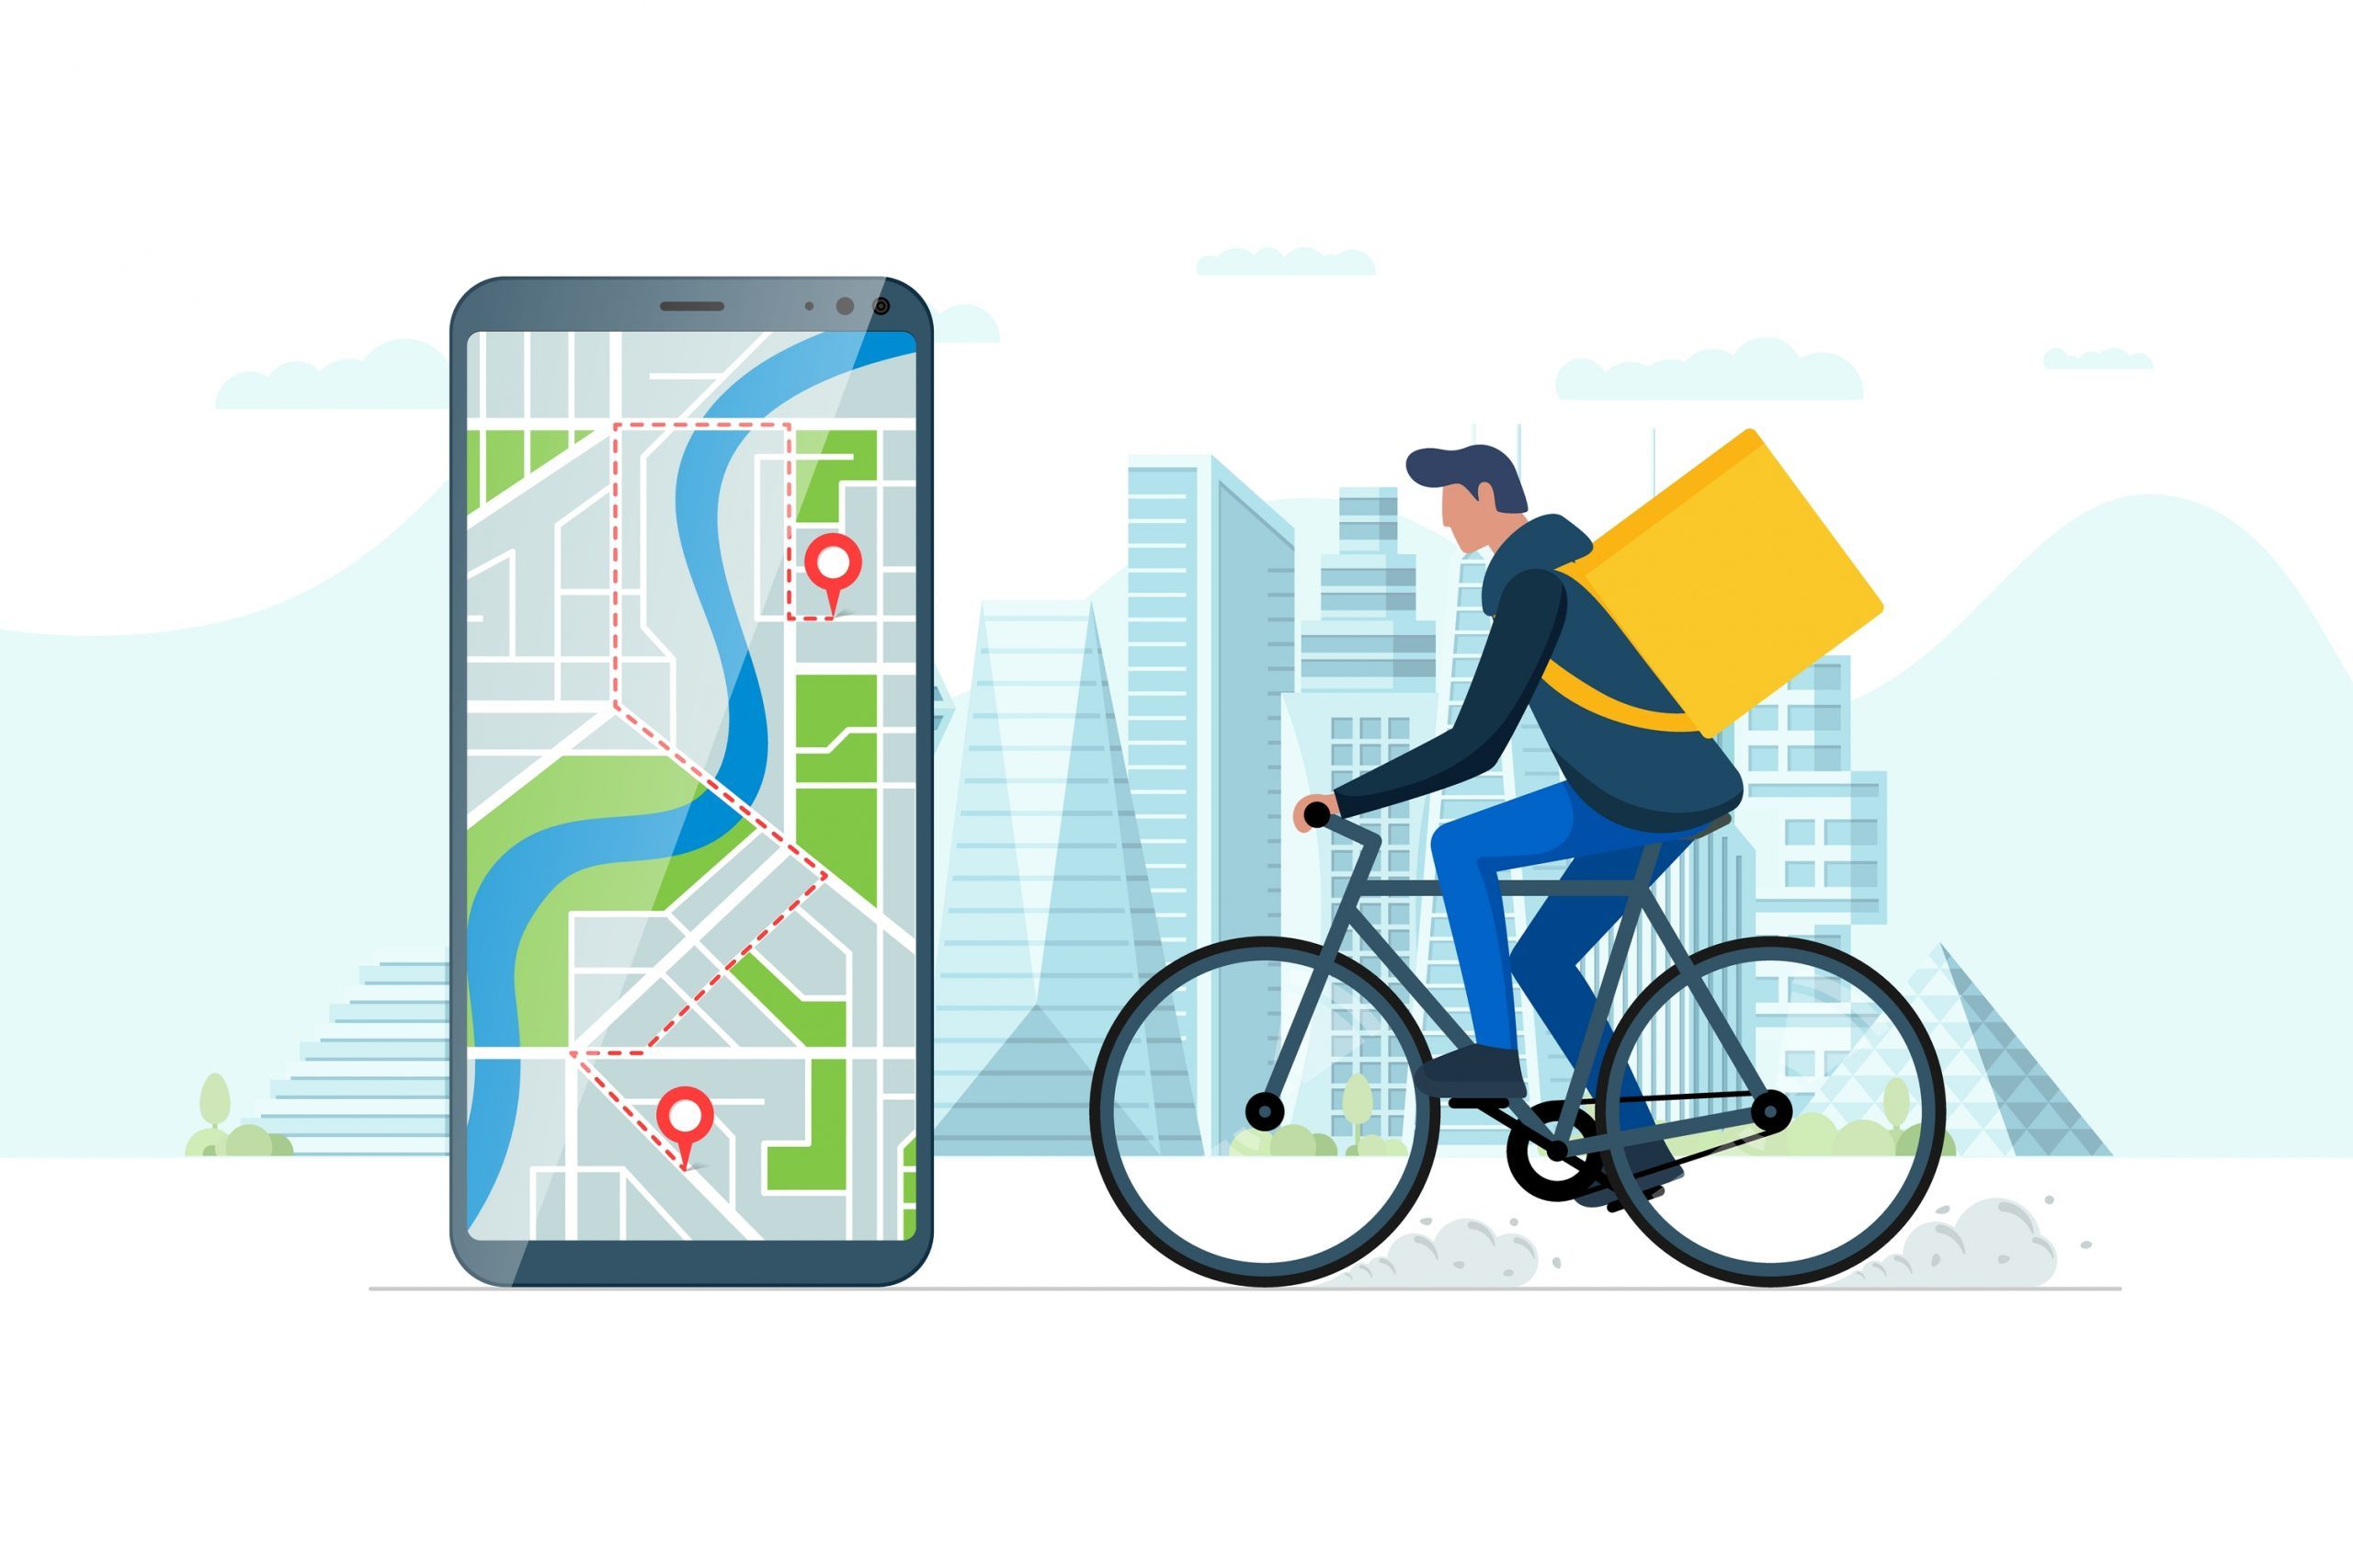 Ein innovatives Konzept für einen schnellen Fahrrad-Lieferdienst über eine Smartphone-App, die Geotagging nutzt.